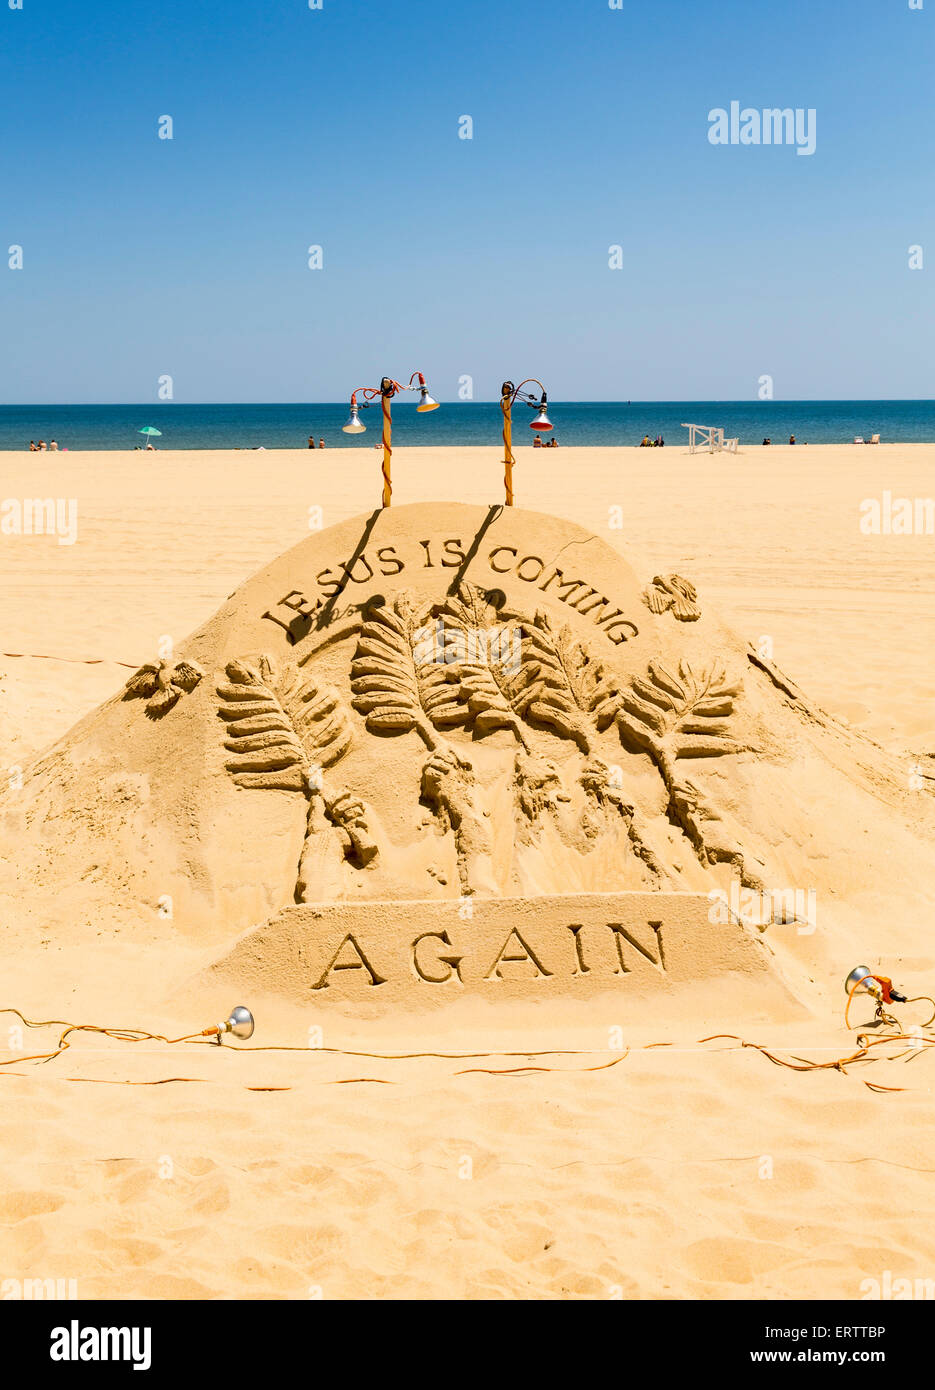 Sculptures de sable sculpture religieuse ou sur la plage sur la côte Est des Etats-Unis, USA Banque D'Images